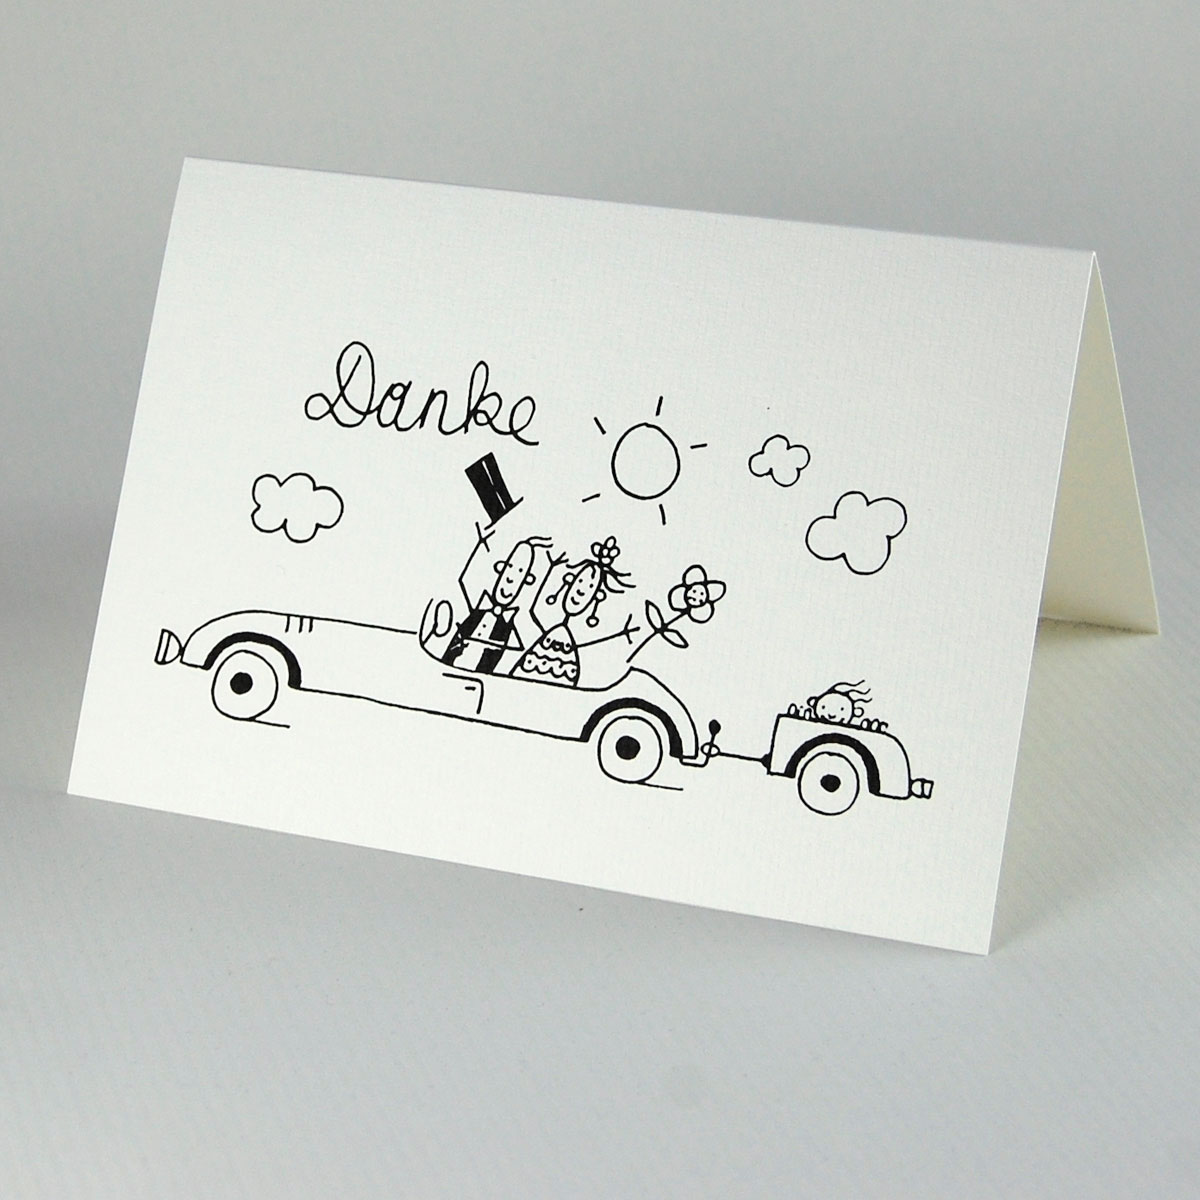 Danke, Brautpaar mit Kind im Auto, Karten für nach der Hochzeit